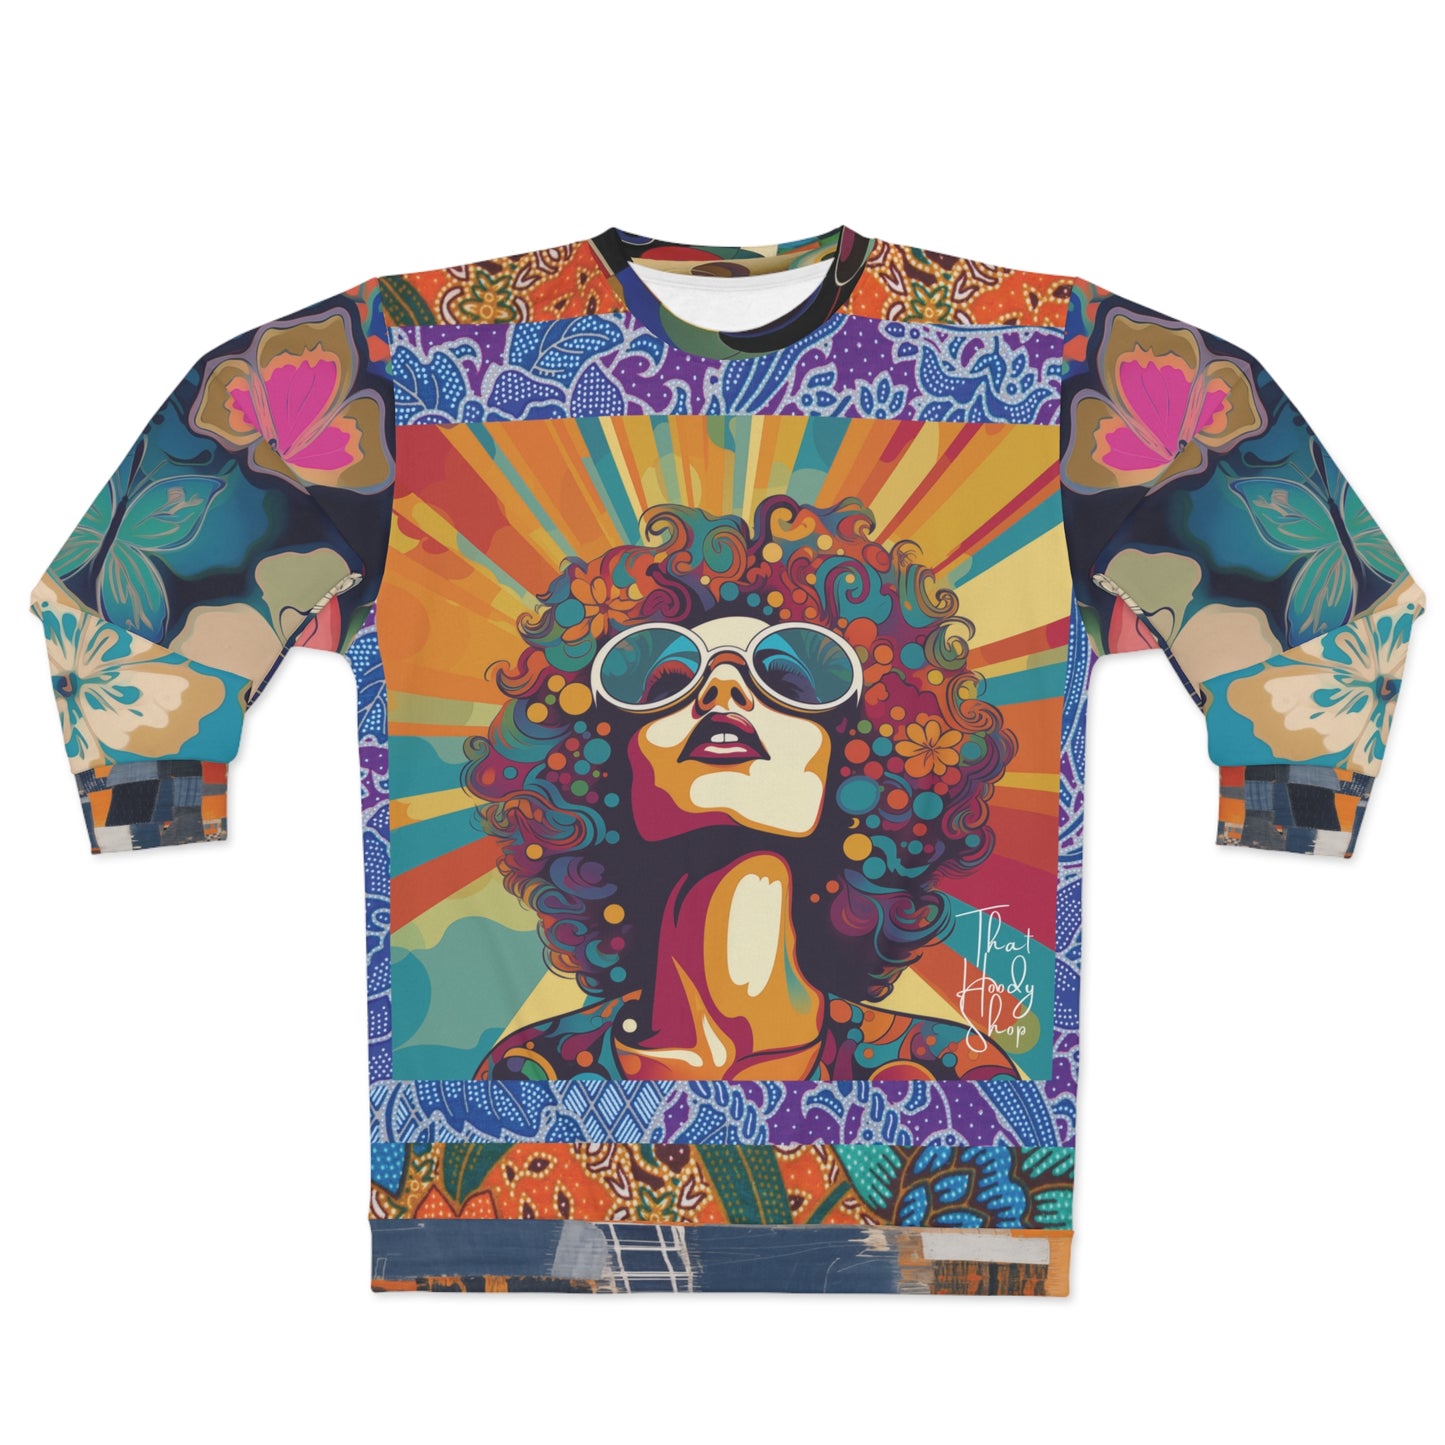 Black Revolutionist Woman Hippie Print Unisex Sweatshirt